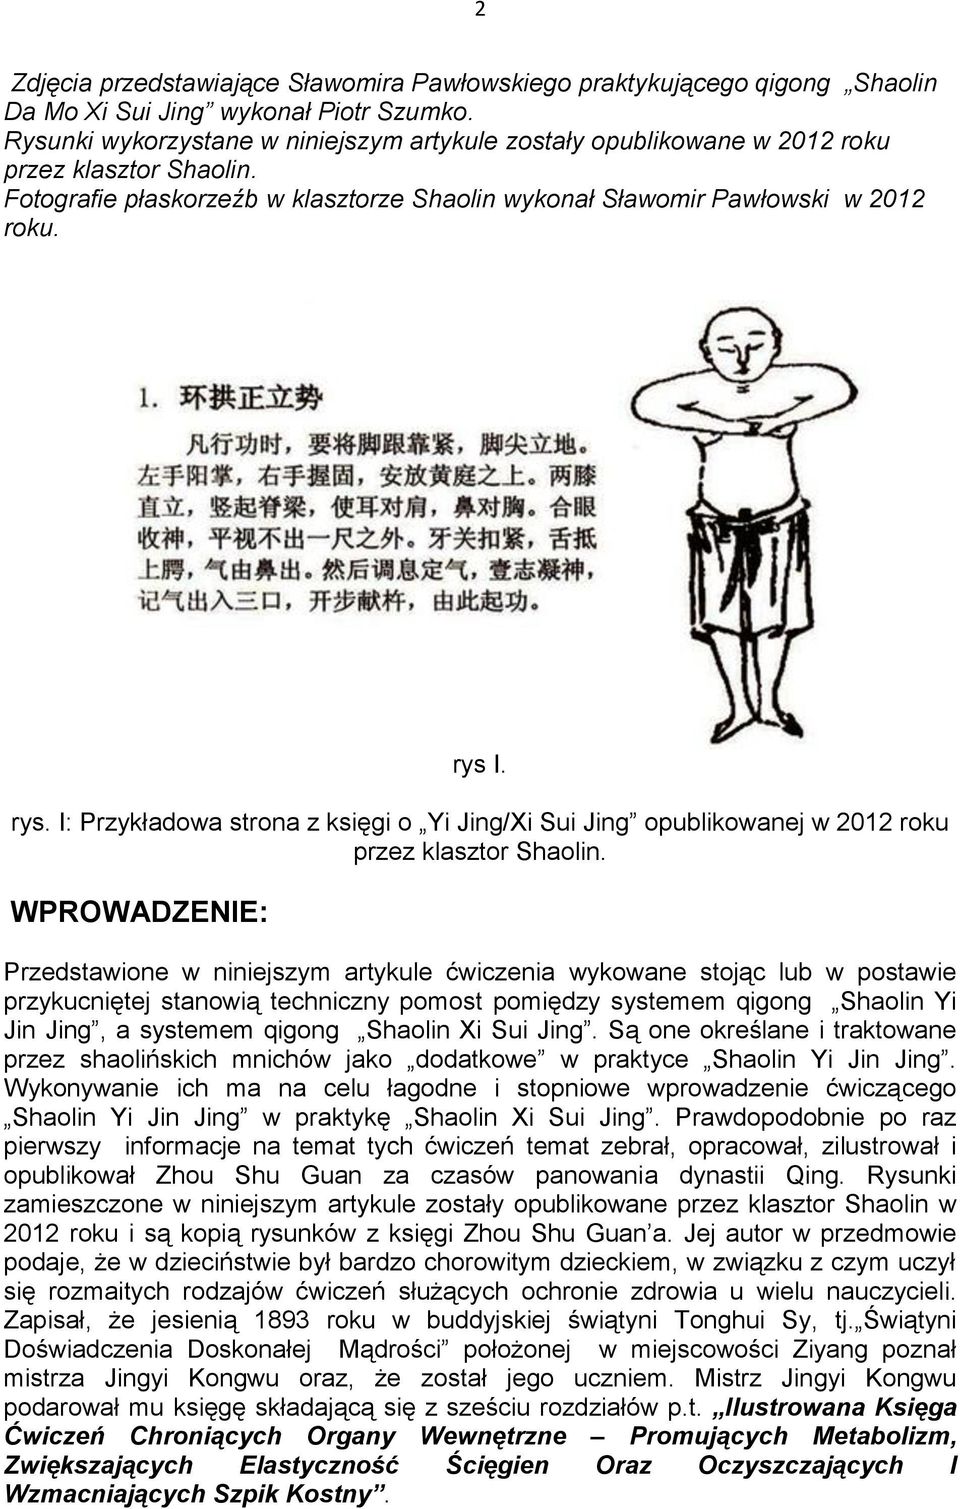 I. rys. I: Przykładowa strona z księgi o Yi Jing/Xi Sui Jing opublikowanej w 2012 roku przez klasztor Shaolin.